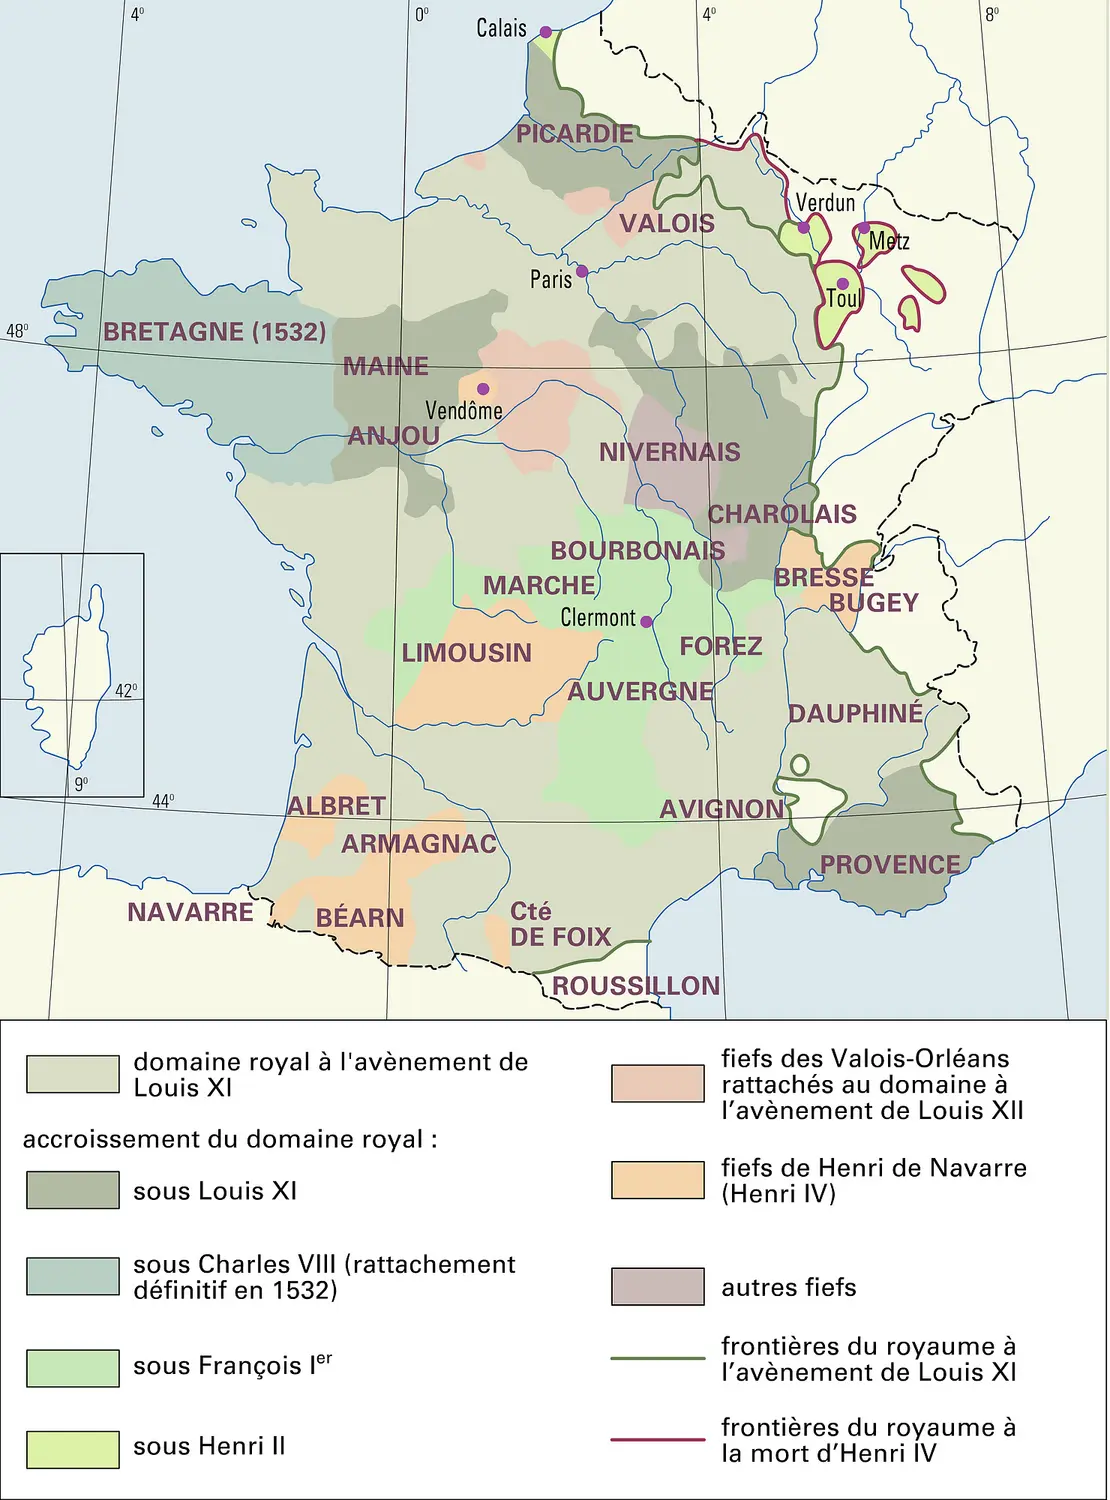 France : formation territoriale, de 1461 à 1610